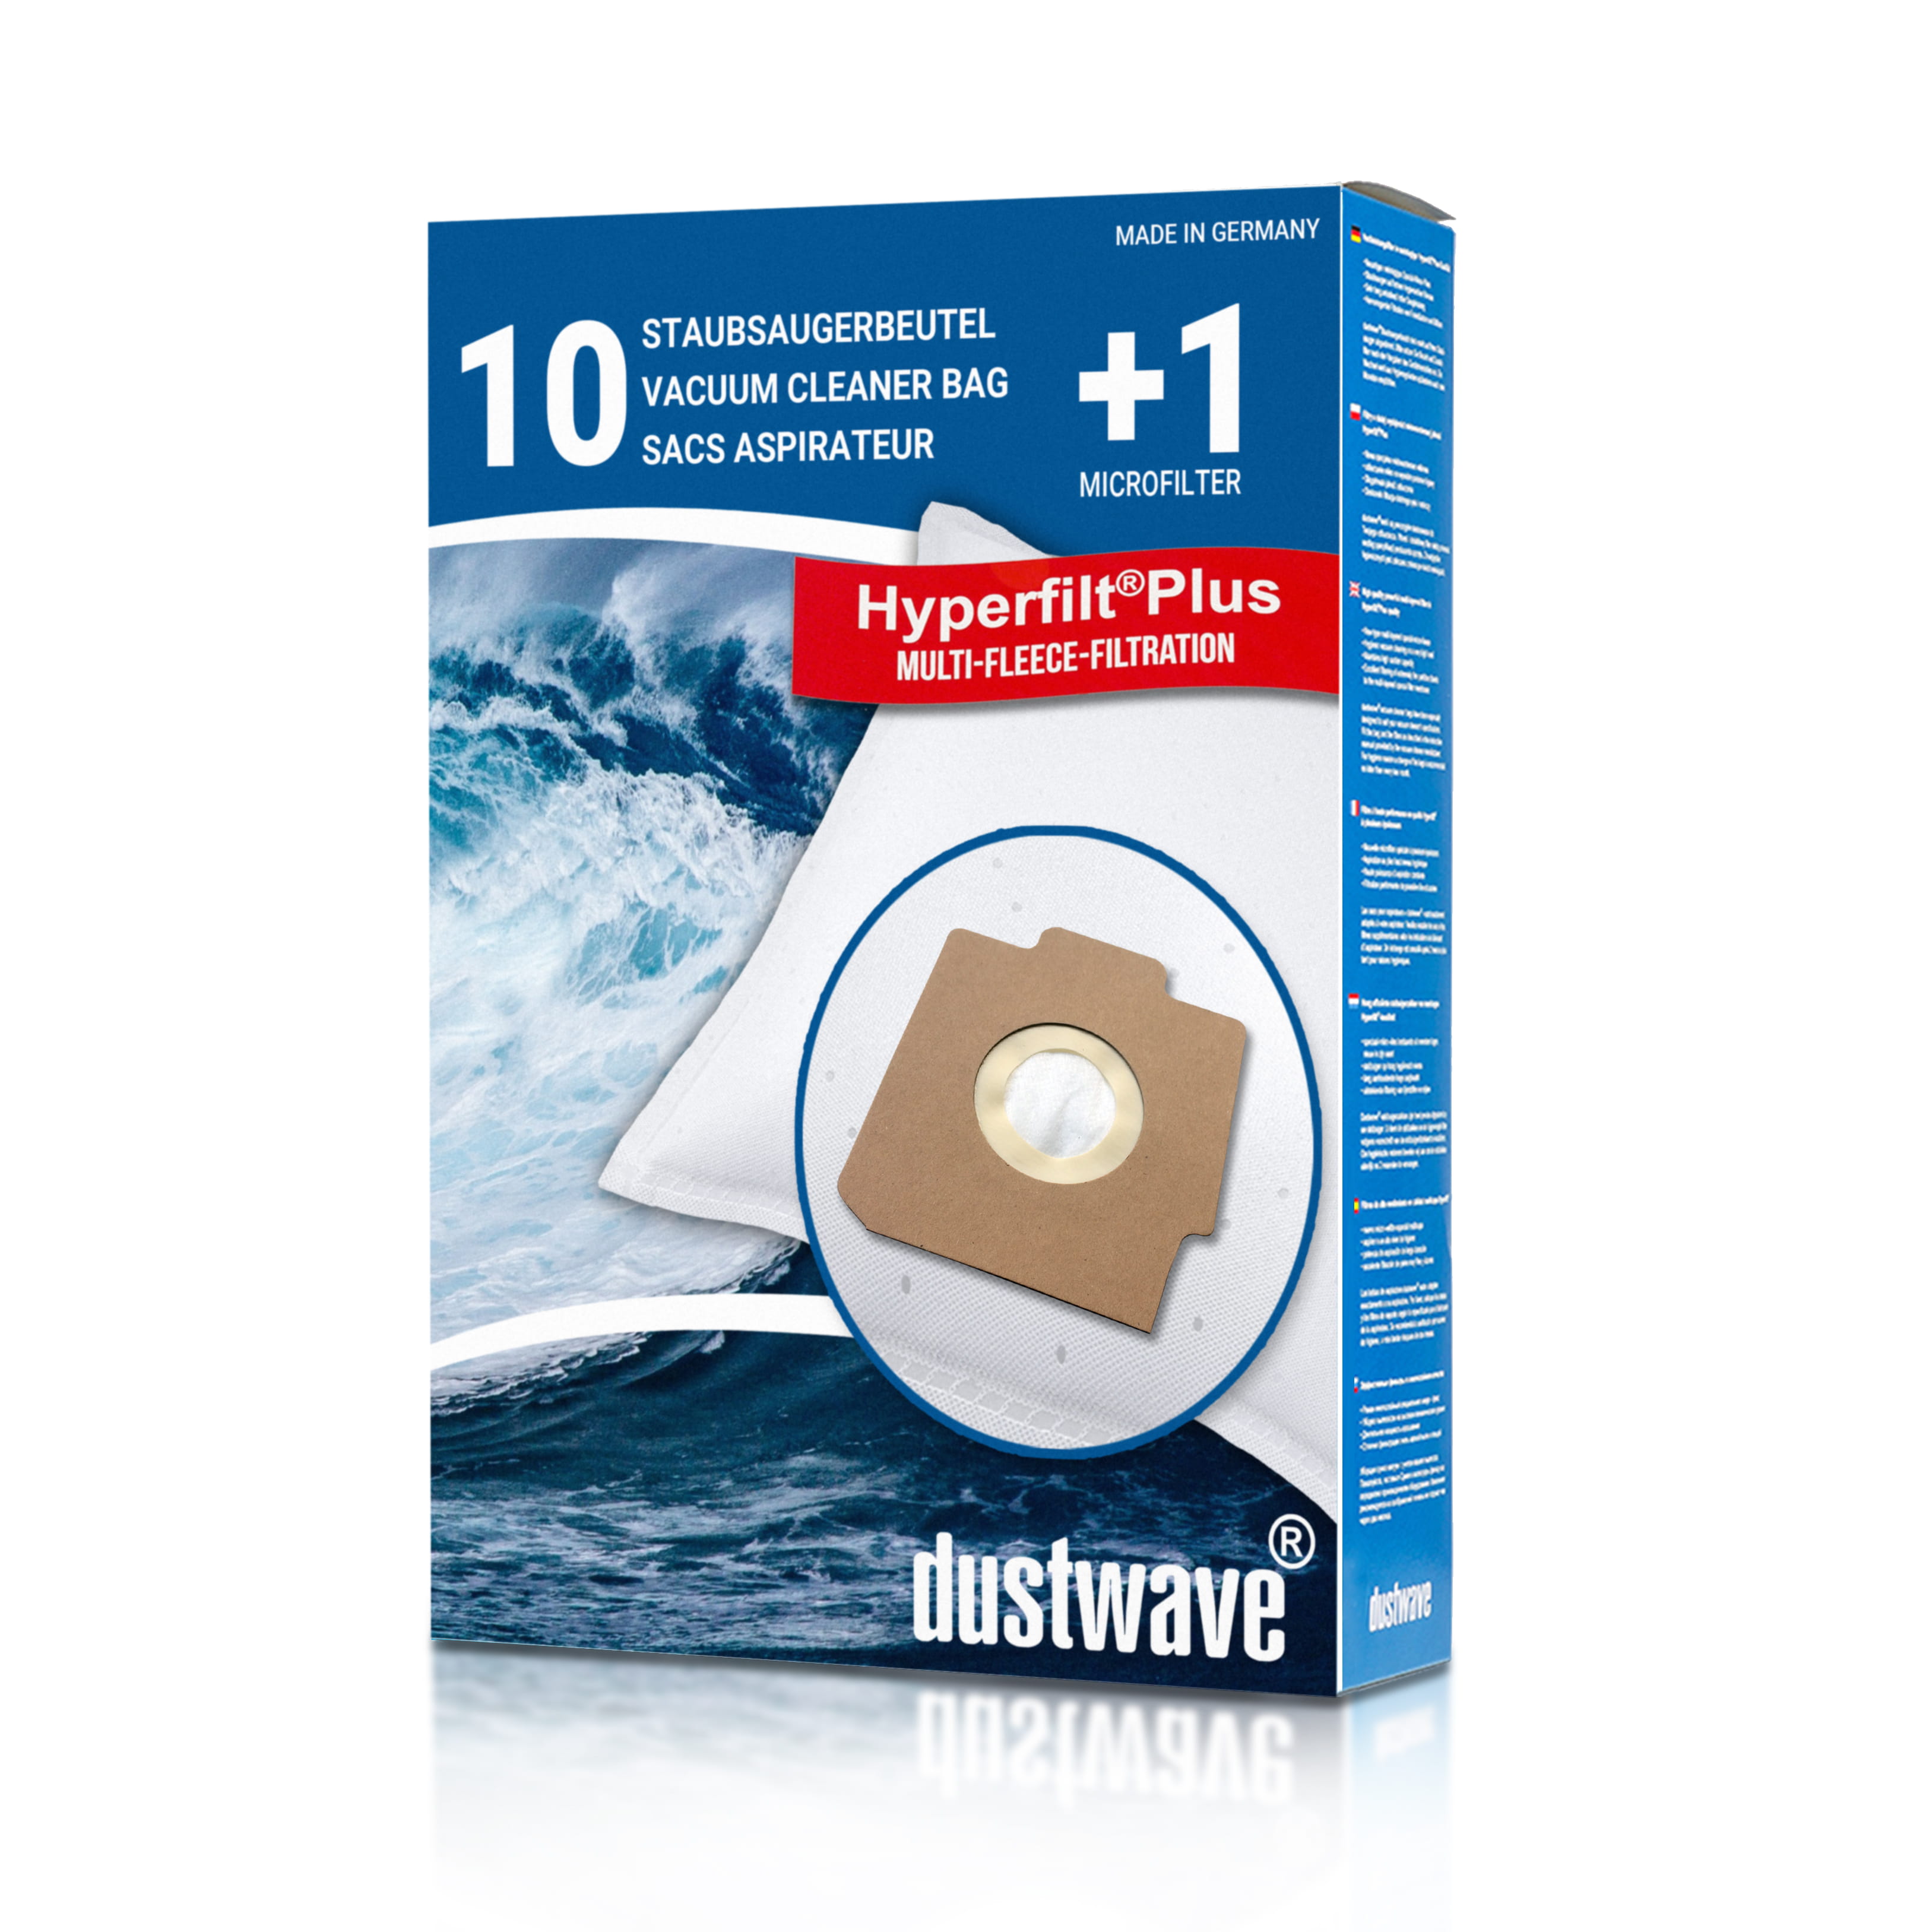 Dustwave® 10 Staubsaugerbeutel für Hoover SC235... / TRSC235 Alpina - hocheffizient, mehrlagiges Mikrovlies mit Hygieneverschluss - Made in Germany